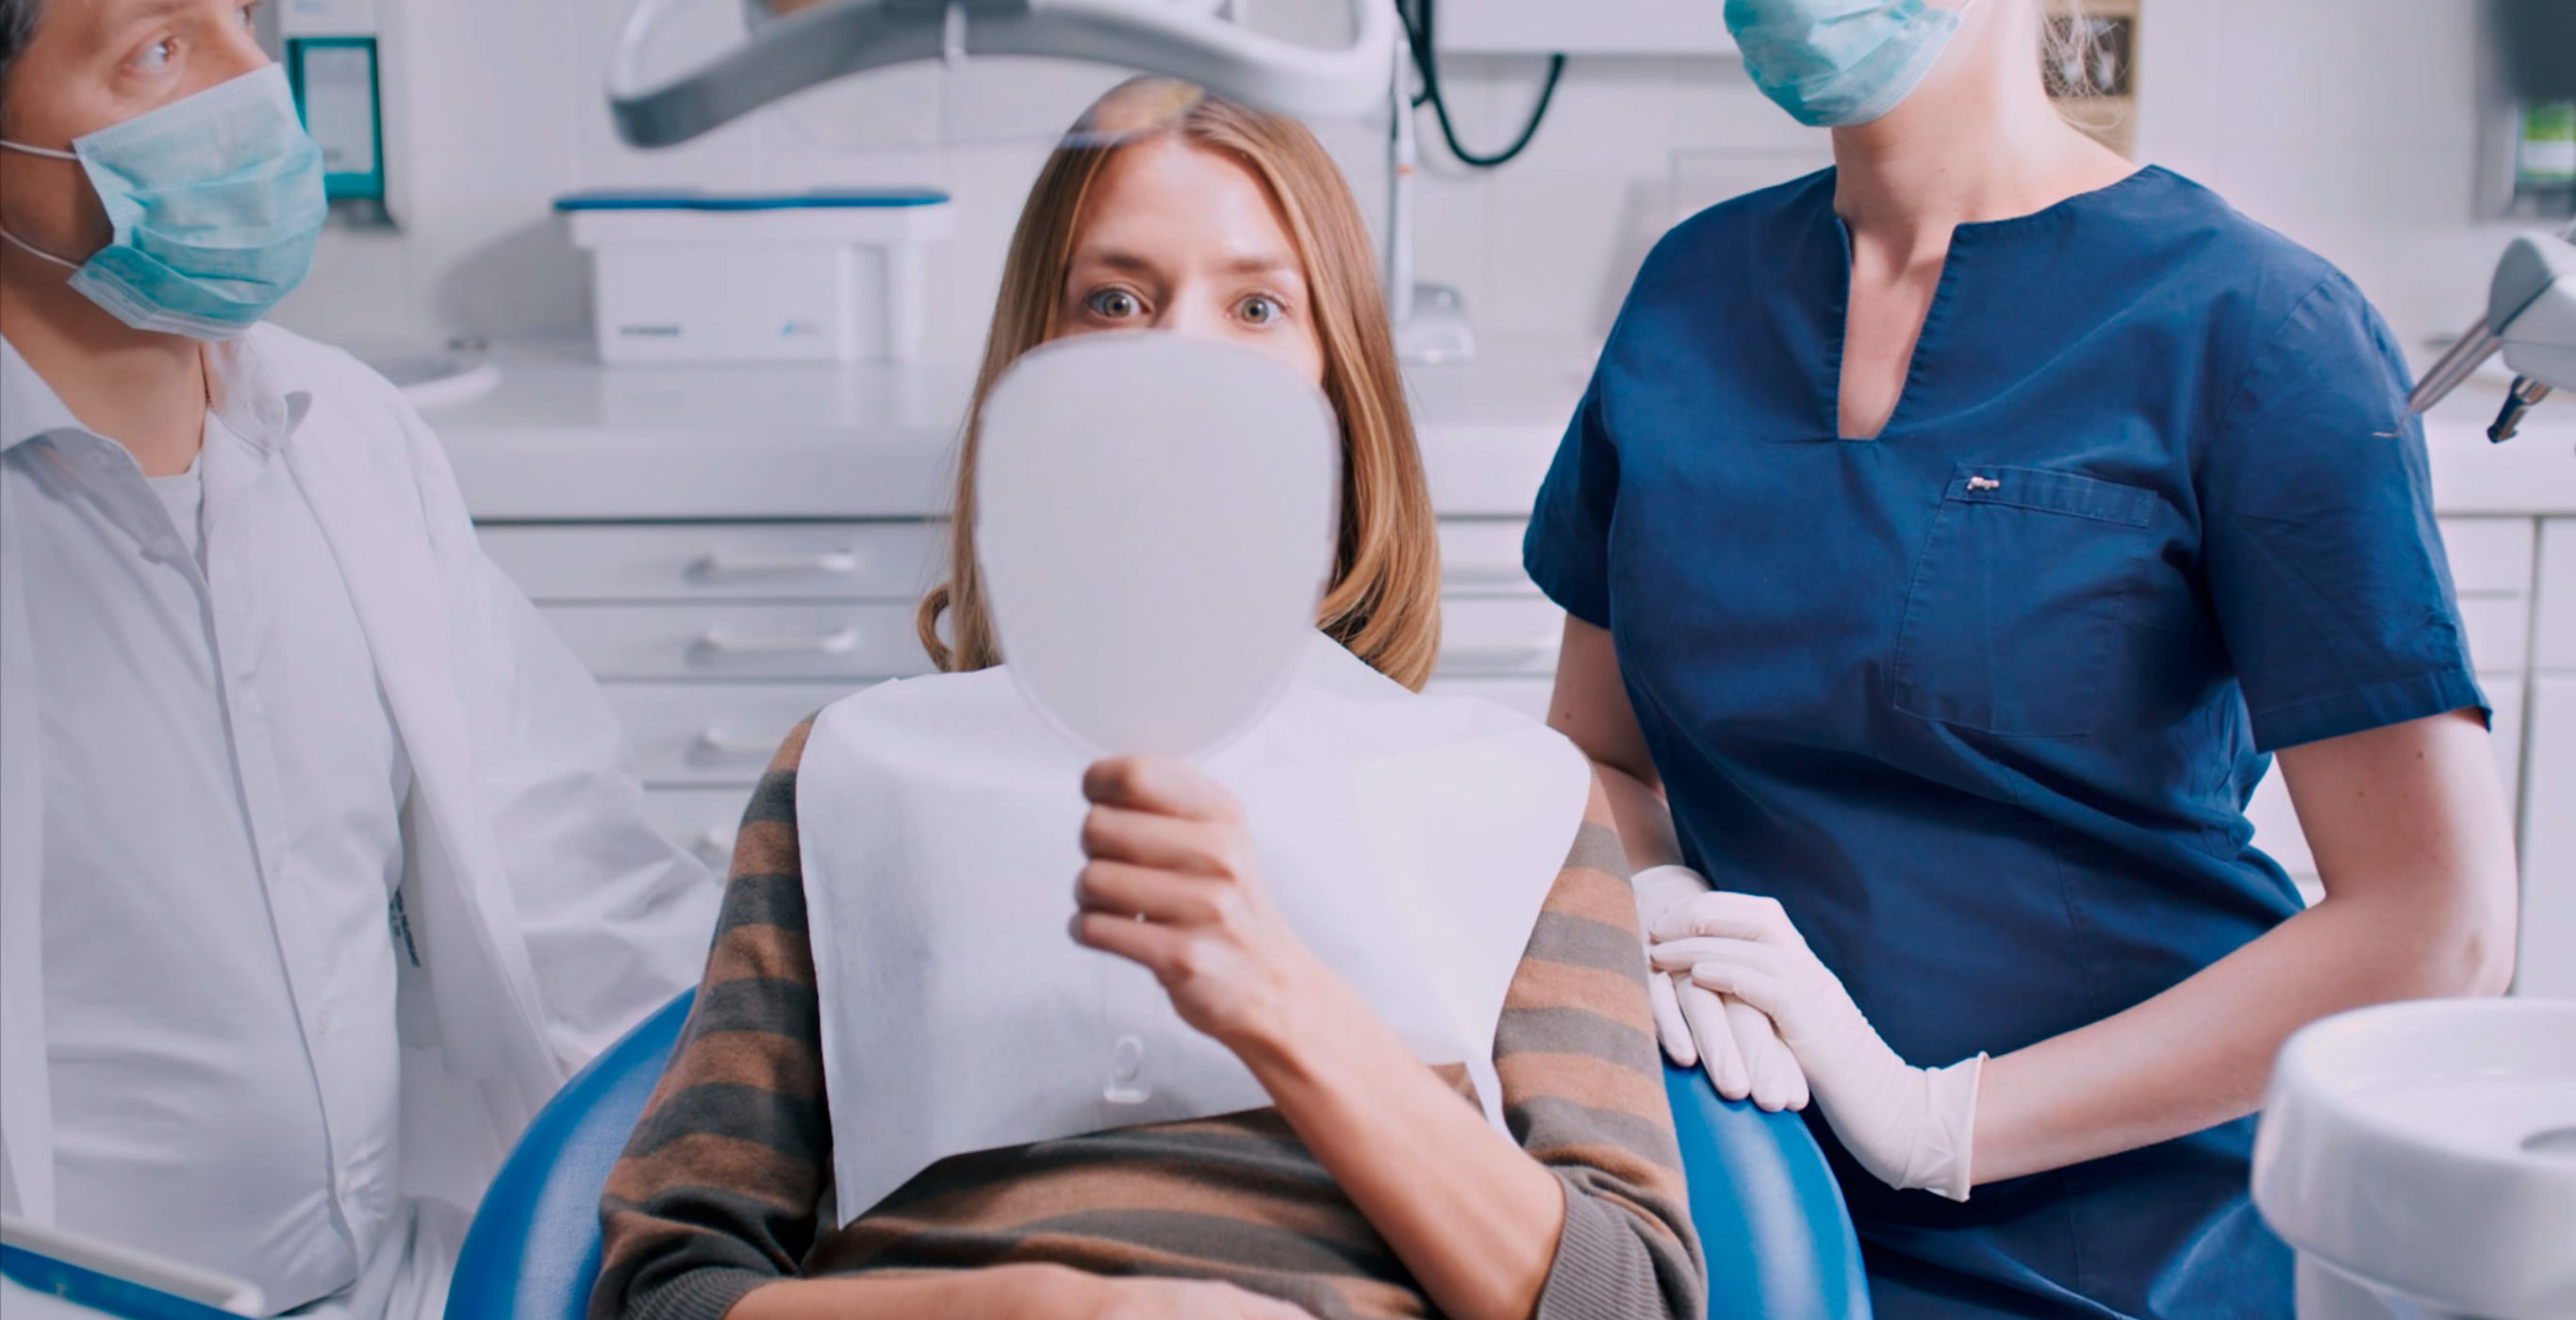 Kampagnenmotiv einer Social-Media-Kampagne der Healthcare Werbeagentur mcs mit einer Patientin beim Zahnarzt, die erstaunt in einen Handspiegel schaut